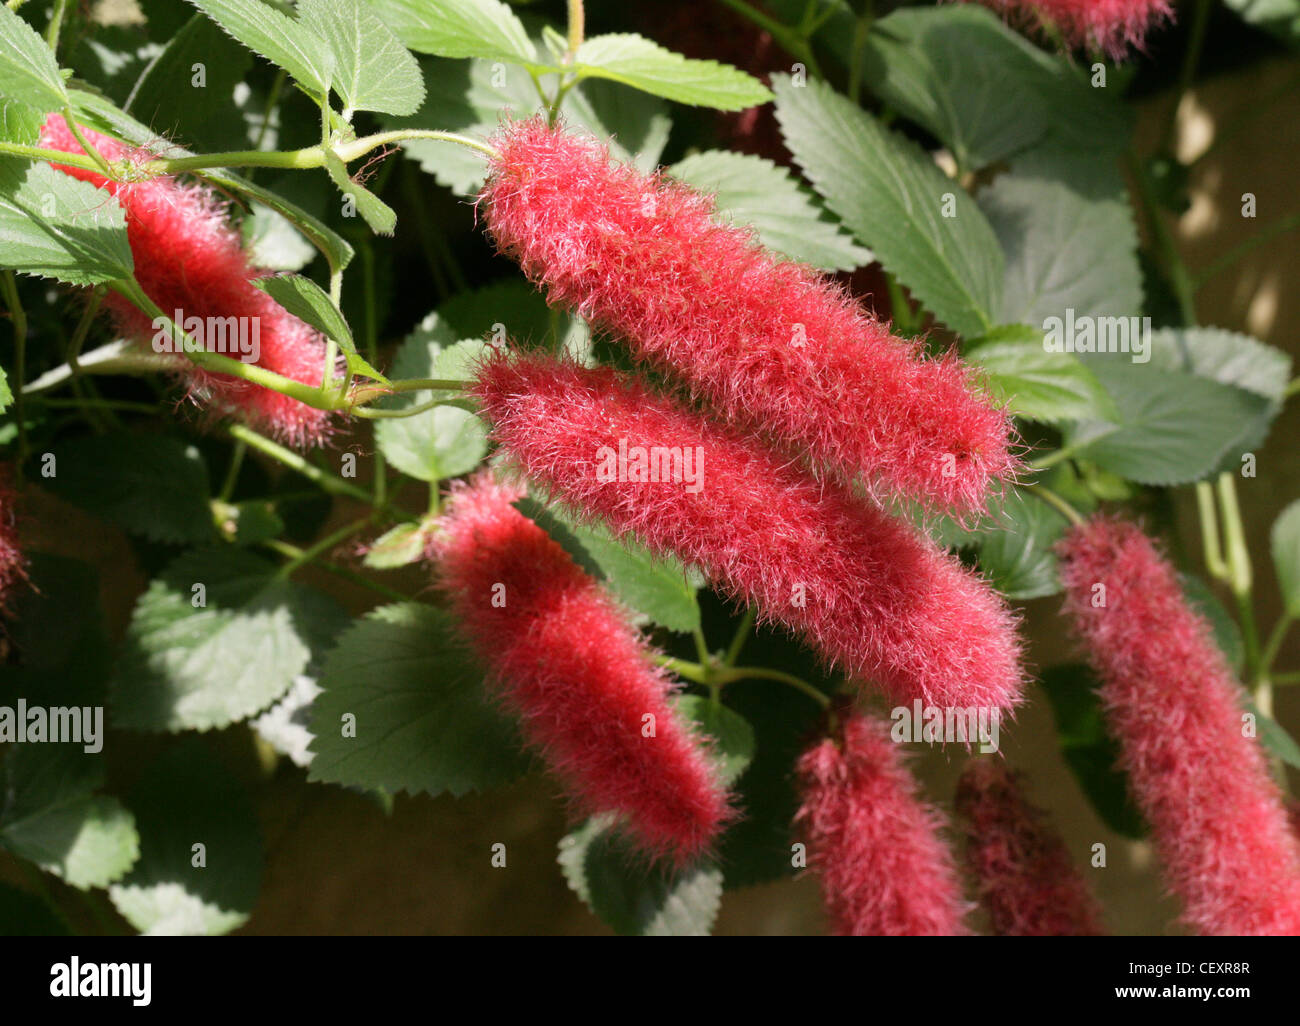 Ou de pied nain plante Chenille, fraise Firetails Red-Hot, queue de chat, queue du chaton, le pendula, Euphorbiaceae. Banque D'Images